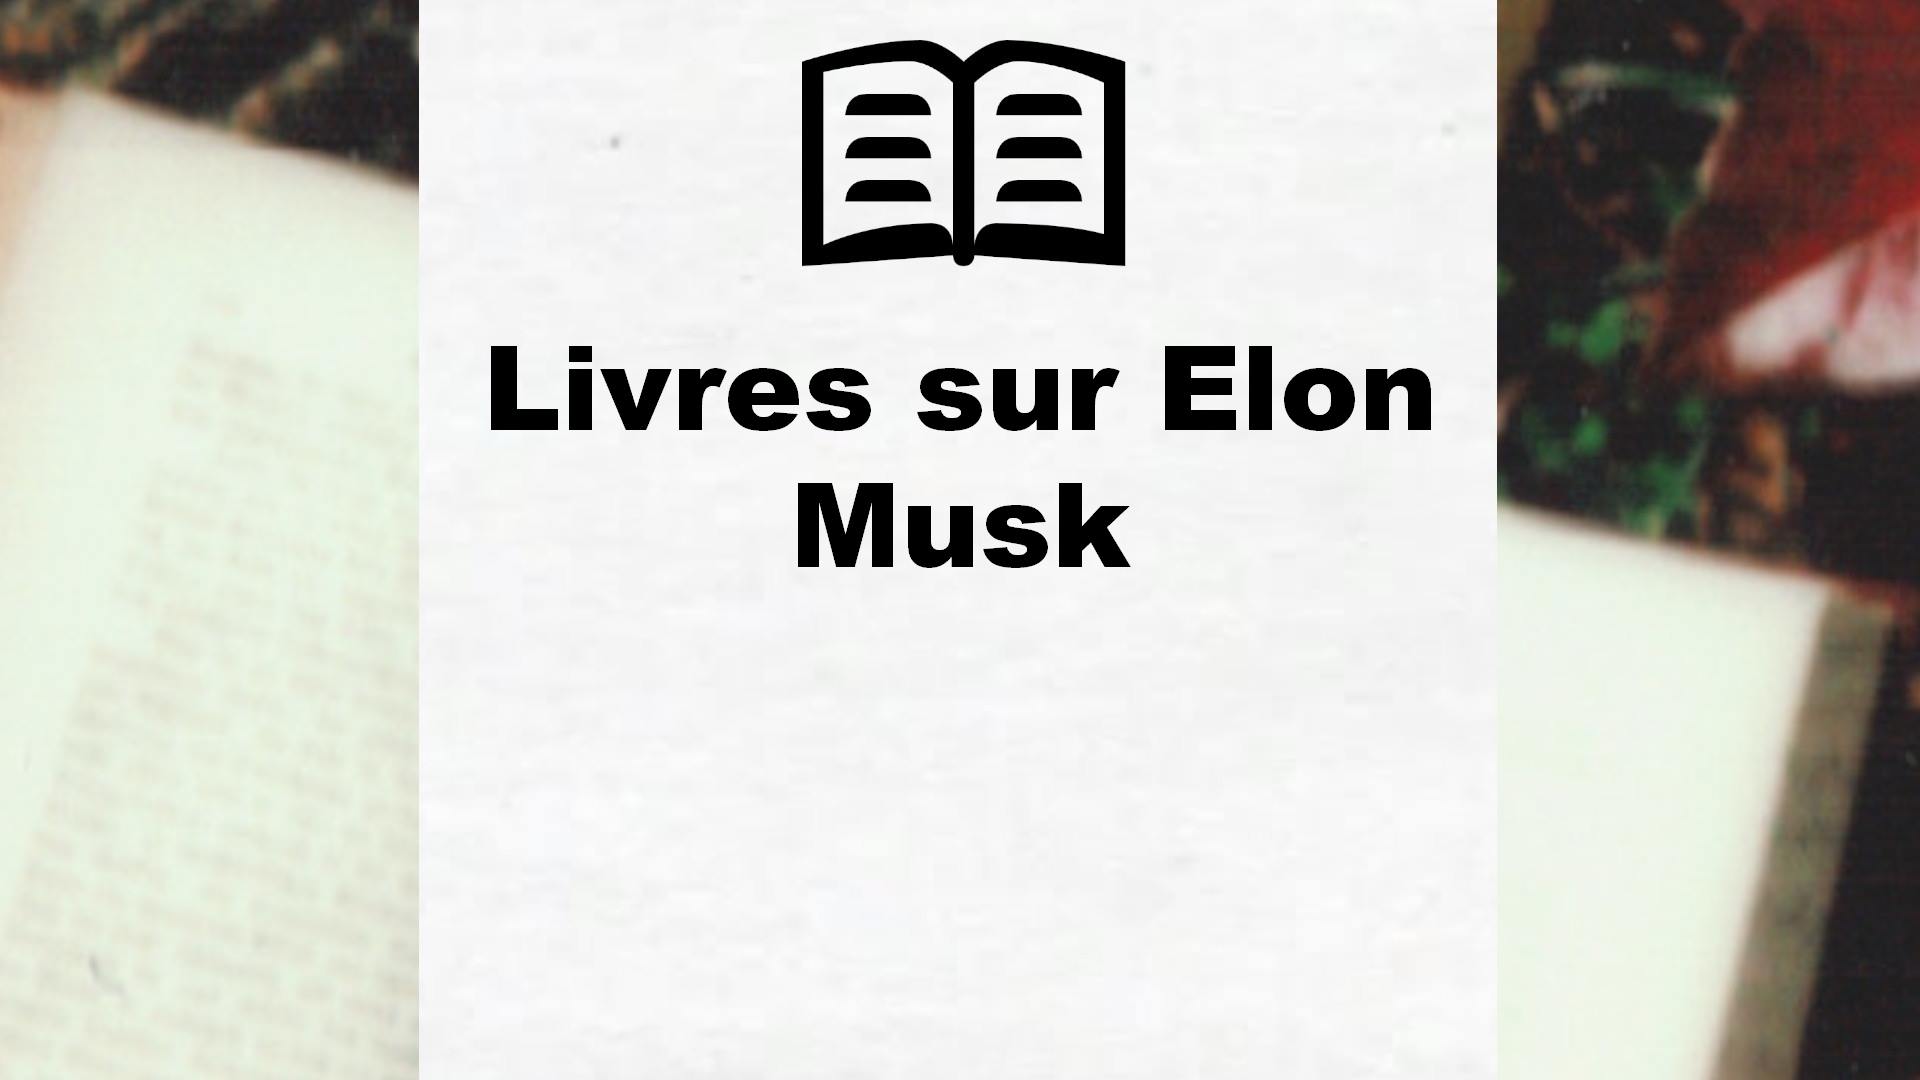 Livres sur Elon Musk